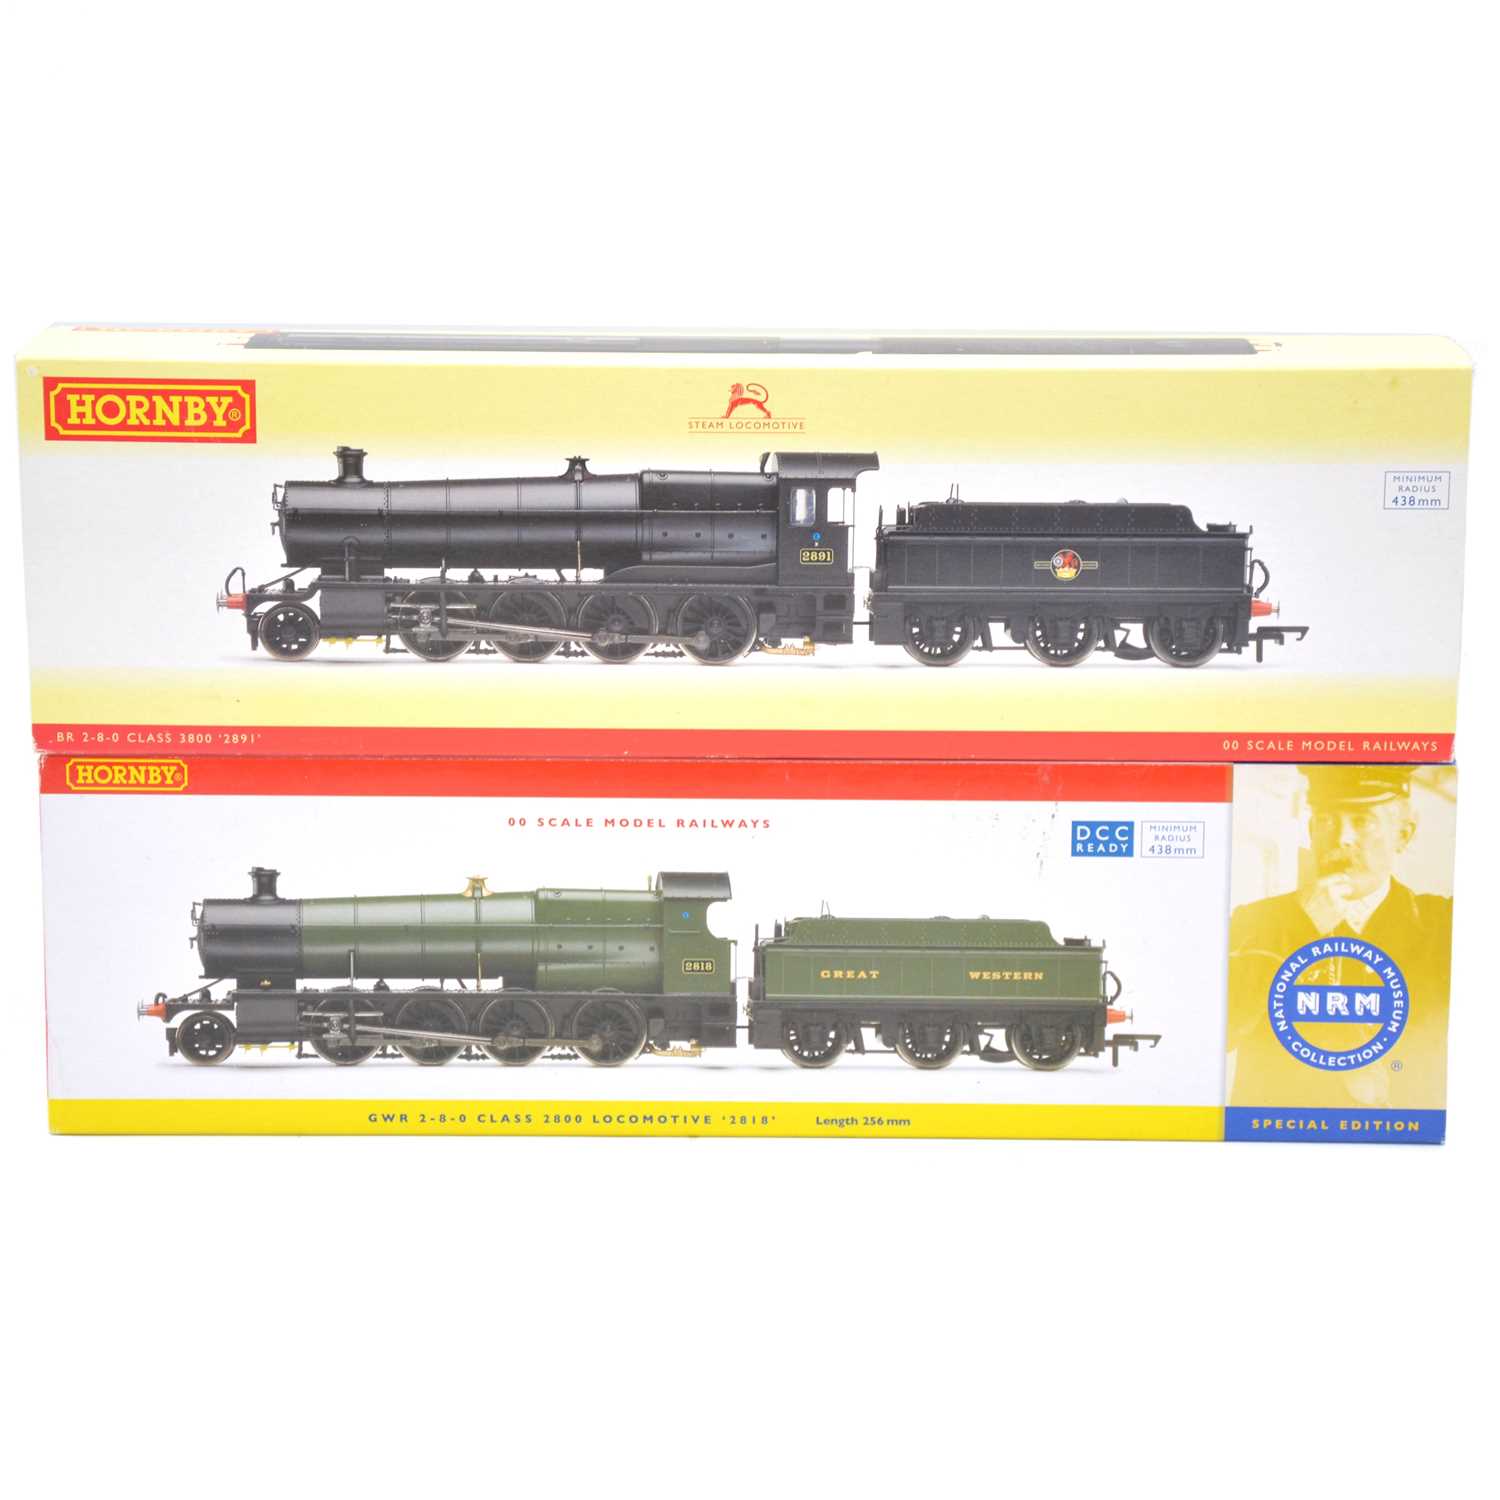 Lot 71 - Two Hornby OO gauge model railway steam locomotives with tenders, boxed